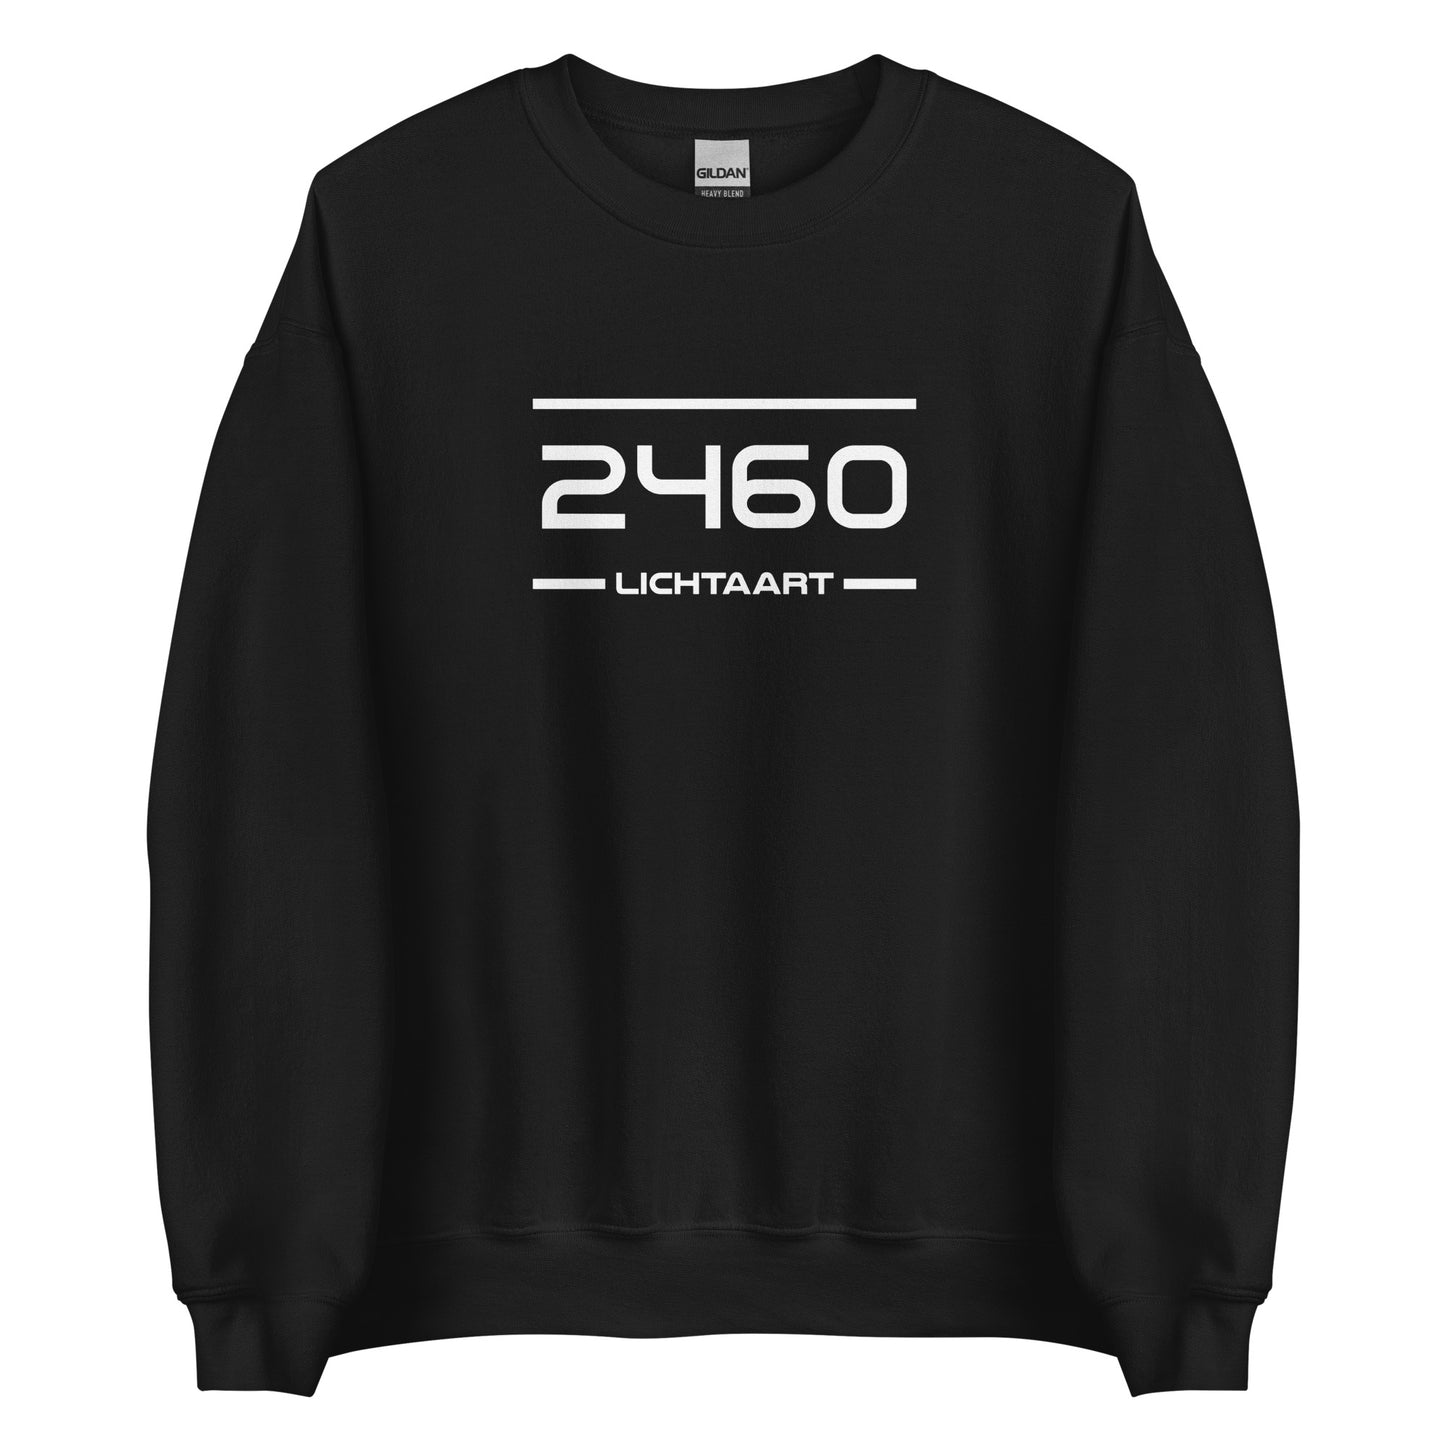 Sweater - 2460 - Lichtaart (M/V)